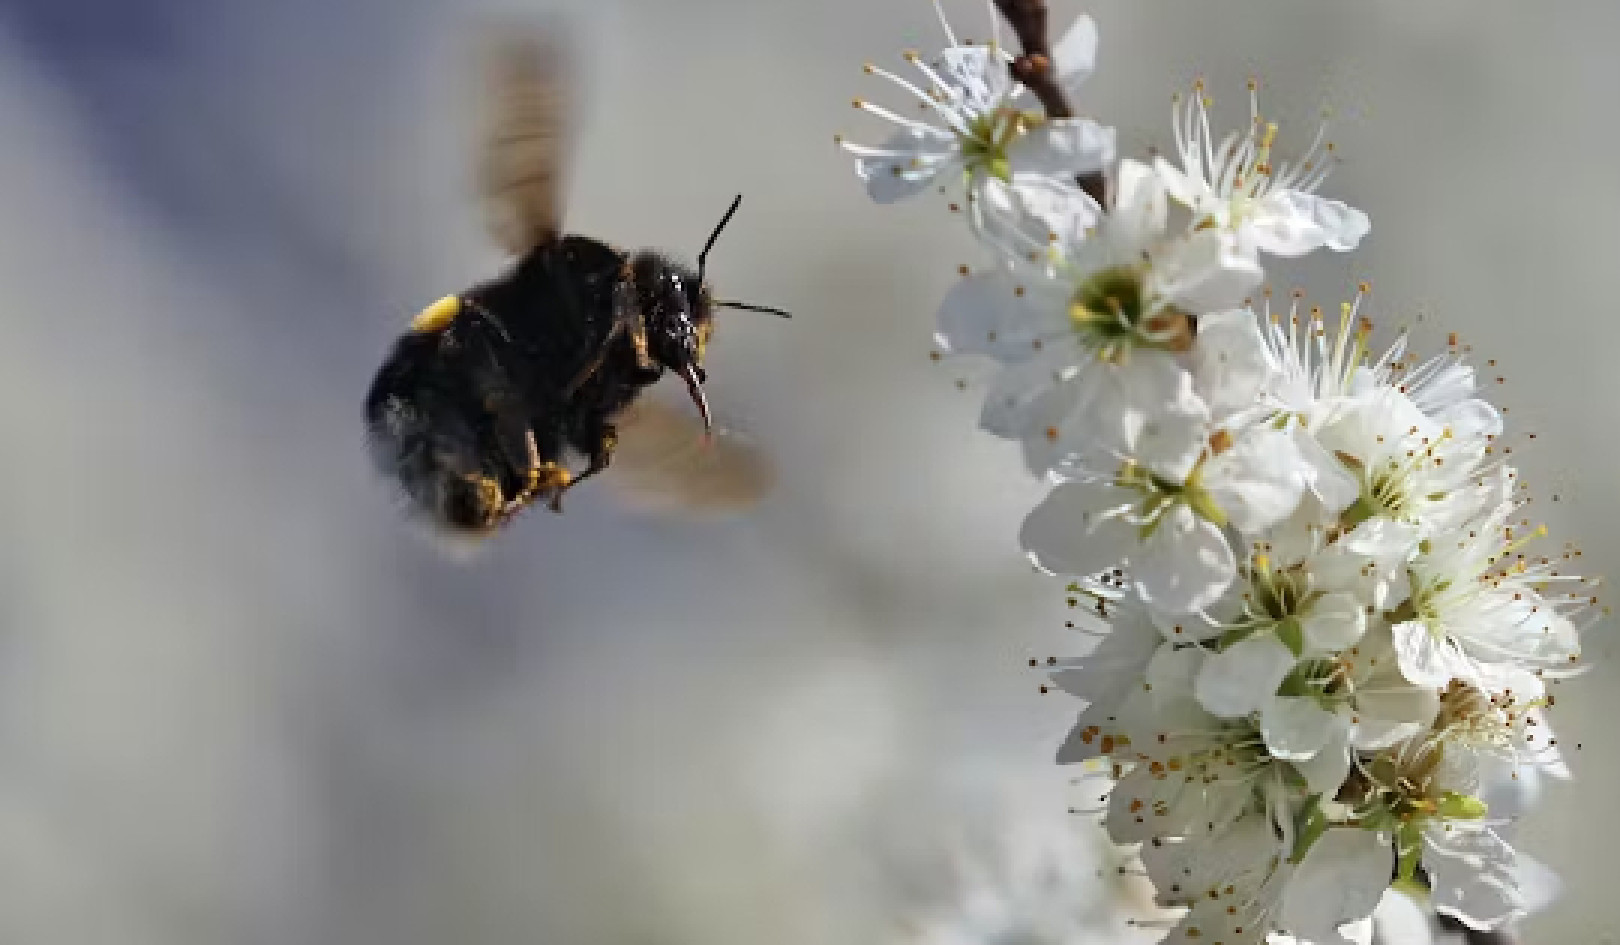 Mehiläisten salaisuuksien avaaminen: kuinka he havaitsevat, navigoivat ja menestyvät